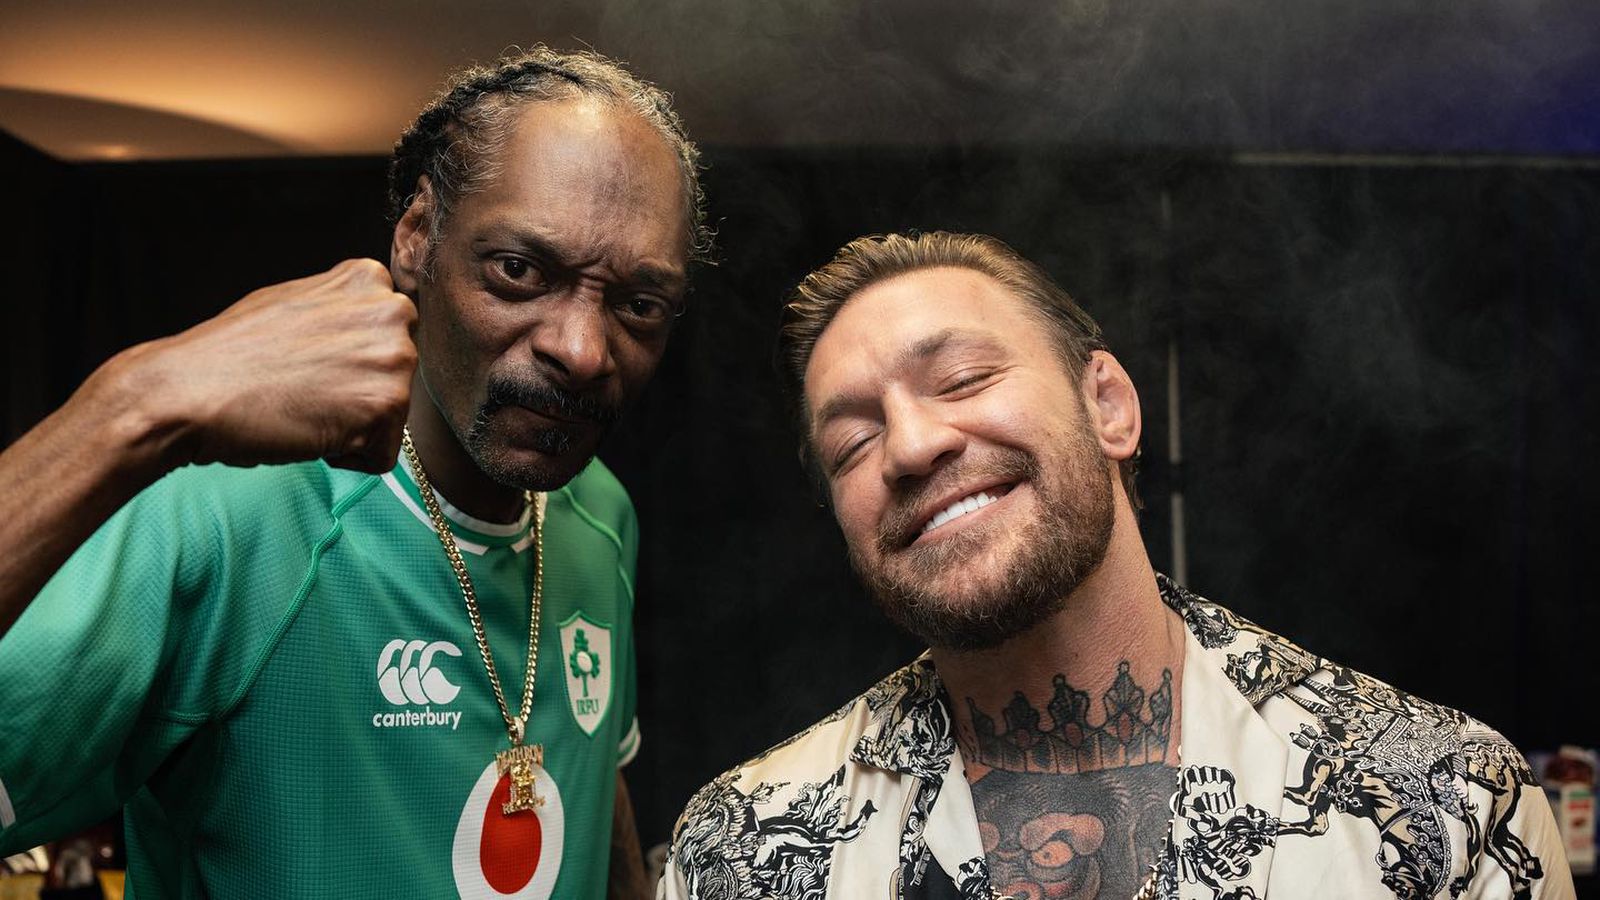 Photo : Conor McGregor fume un blunt avec Snoop Dogg et monte sur scène pendant un concert à Dublin